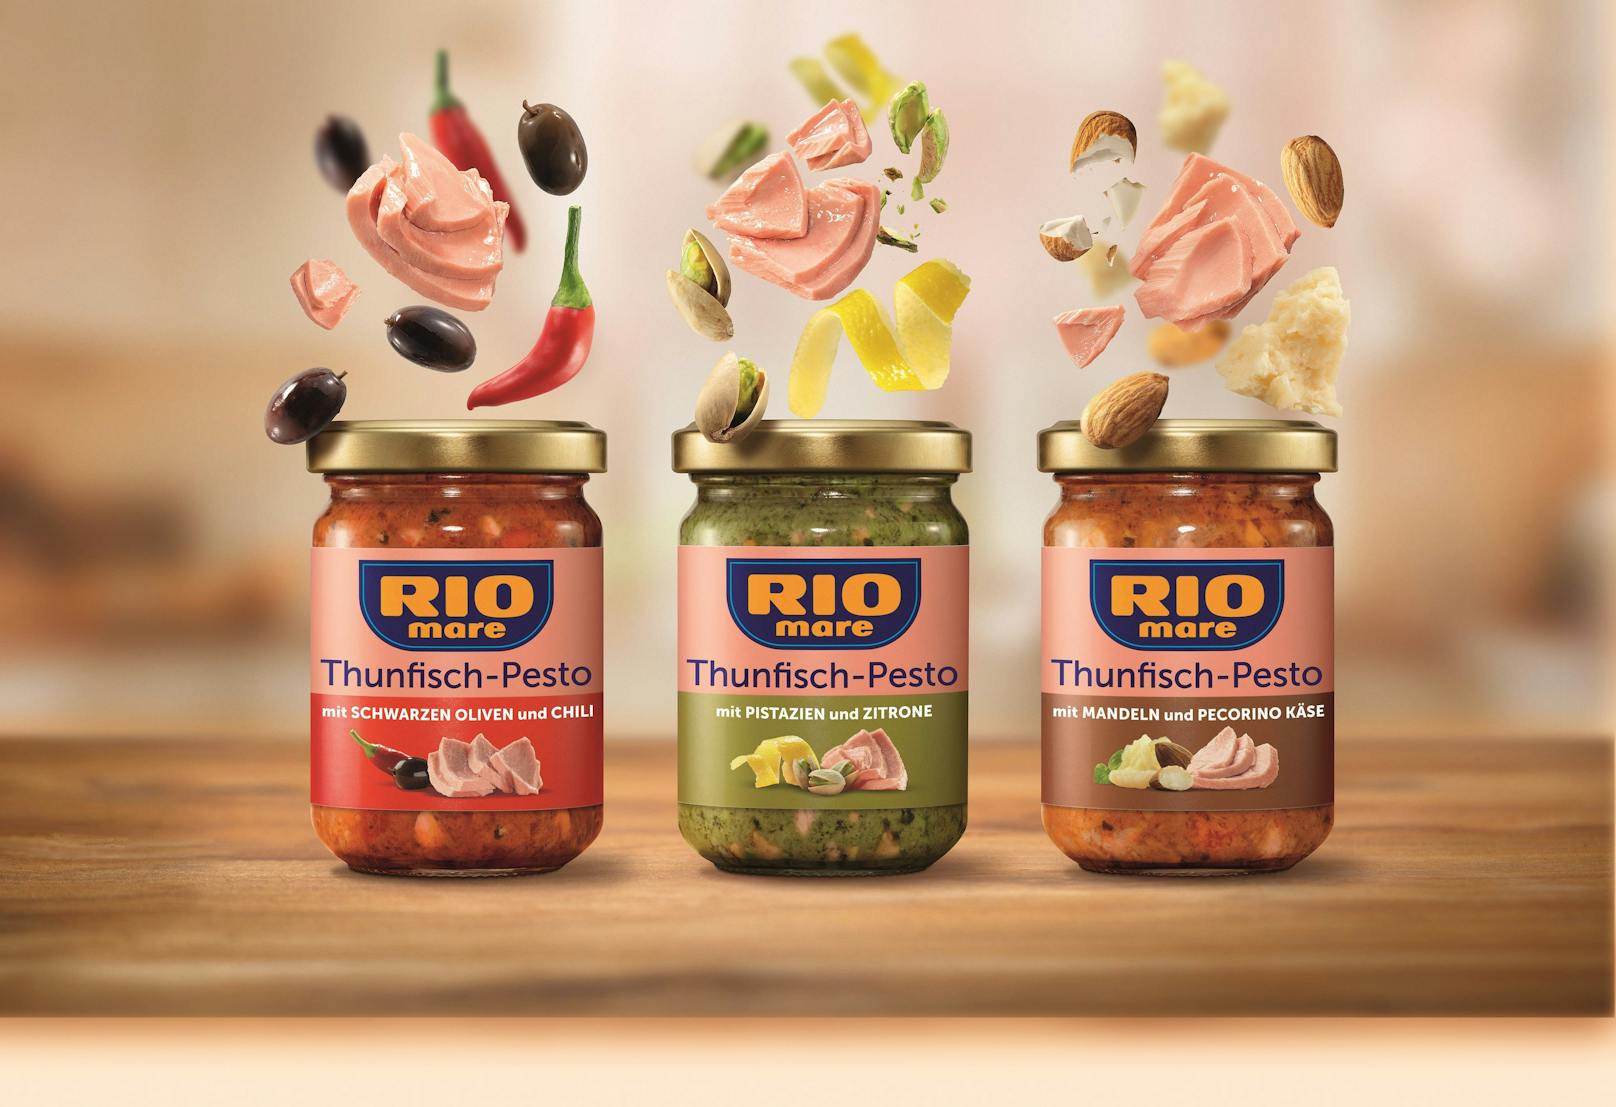 Rio Mare Thunfisch-Pesto gibt es in den Geschmackssorten Mandeln und Pecorino Käse, schwarzen Oliven und Chili sowie Pistazien und Zitrone.